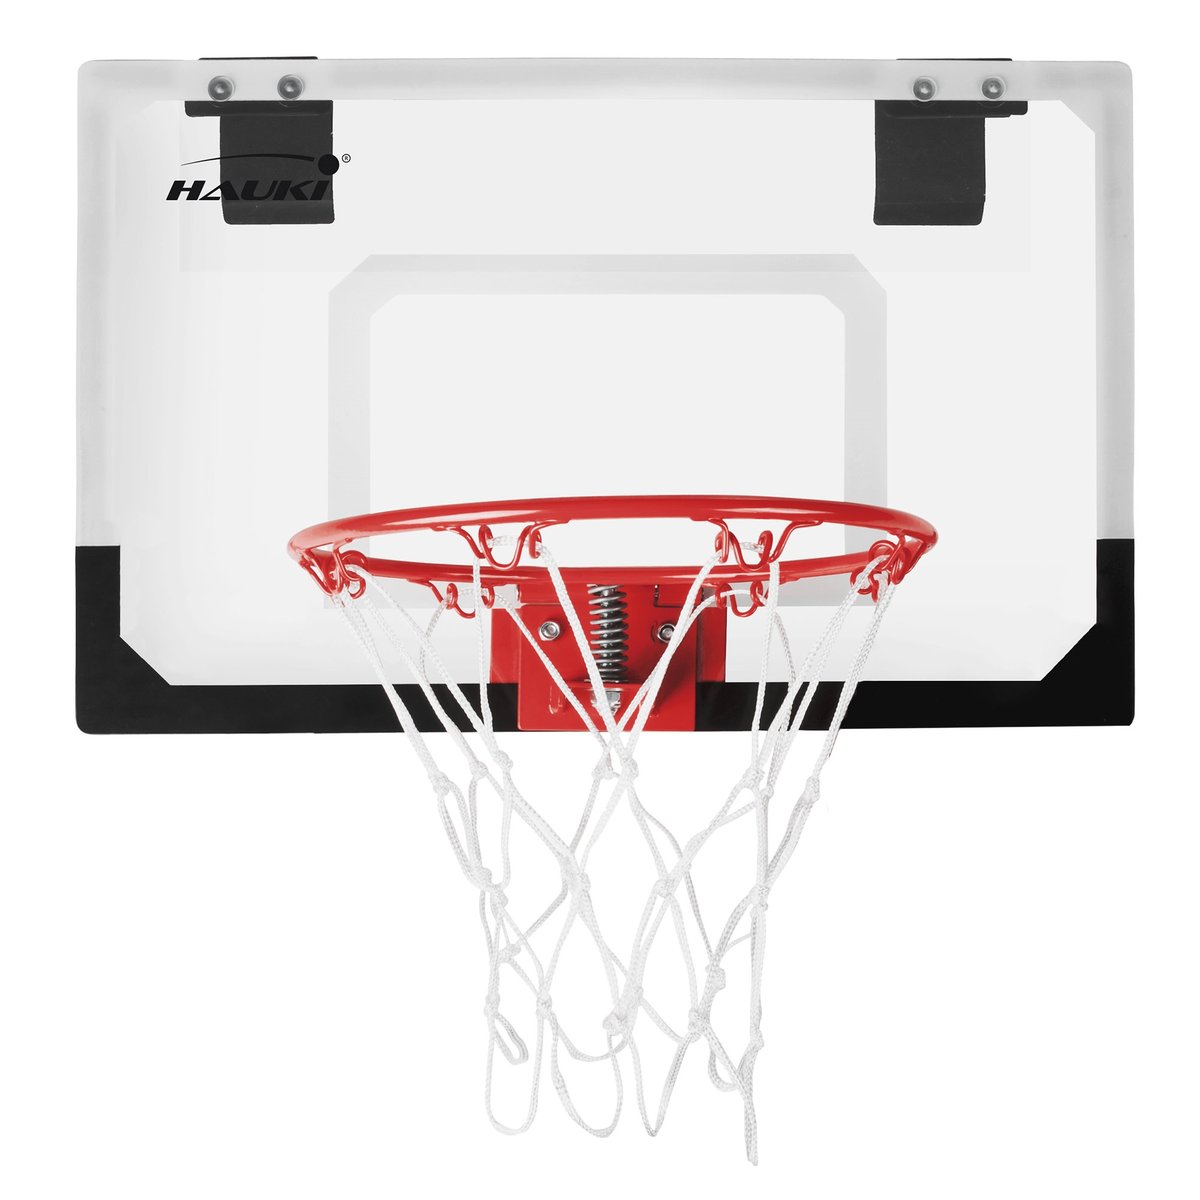 Zdjęcia - Kosz do koszykówki Zestaw obręczy do koszykówki z 3 piłkami 58x40 cm biały wykonany z nylonu